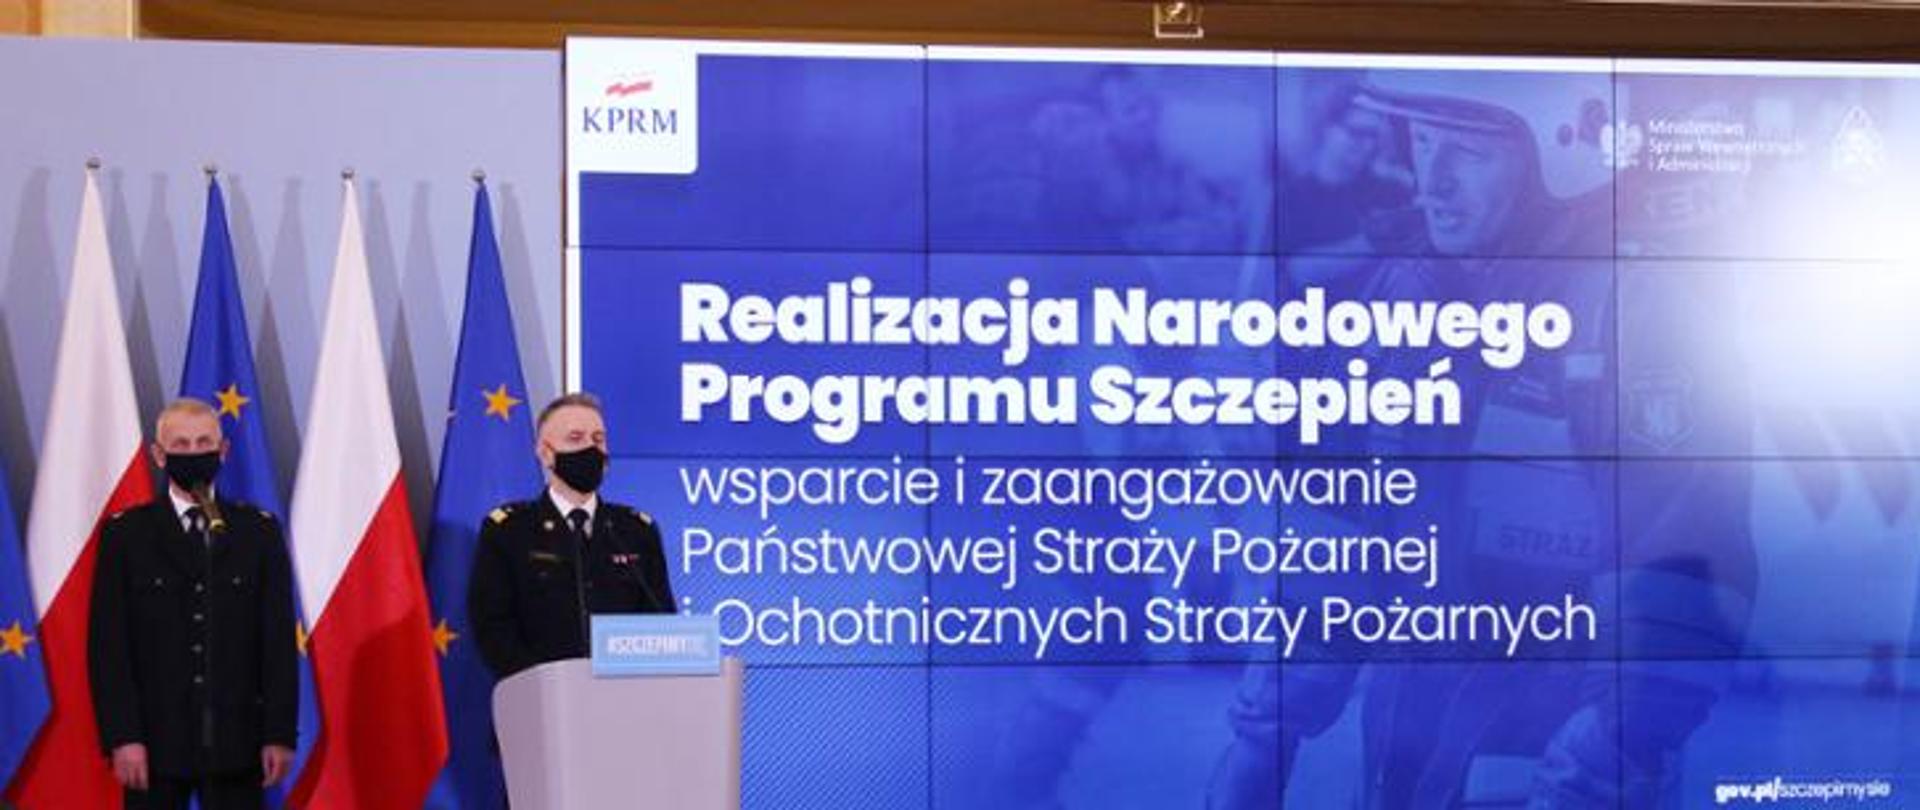 Konferencja prasowa w Kancelarii Prezesa Rady Ministrów ws. realizacji Narodowego Programu Szczepień - KG PSP